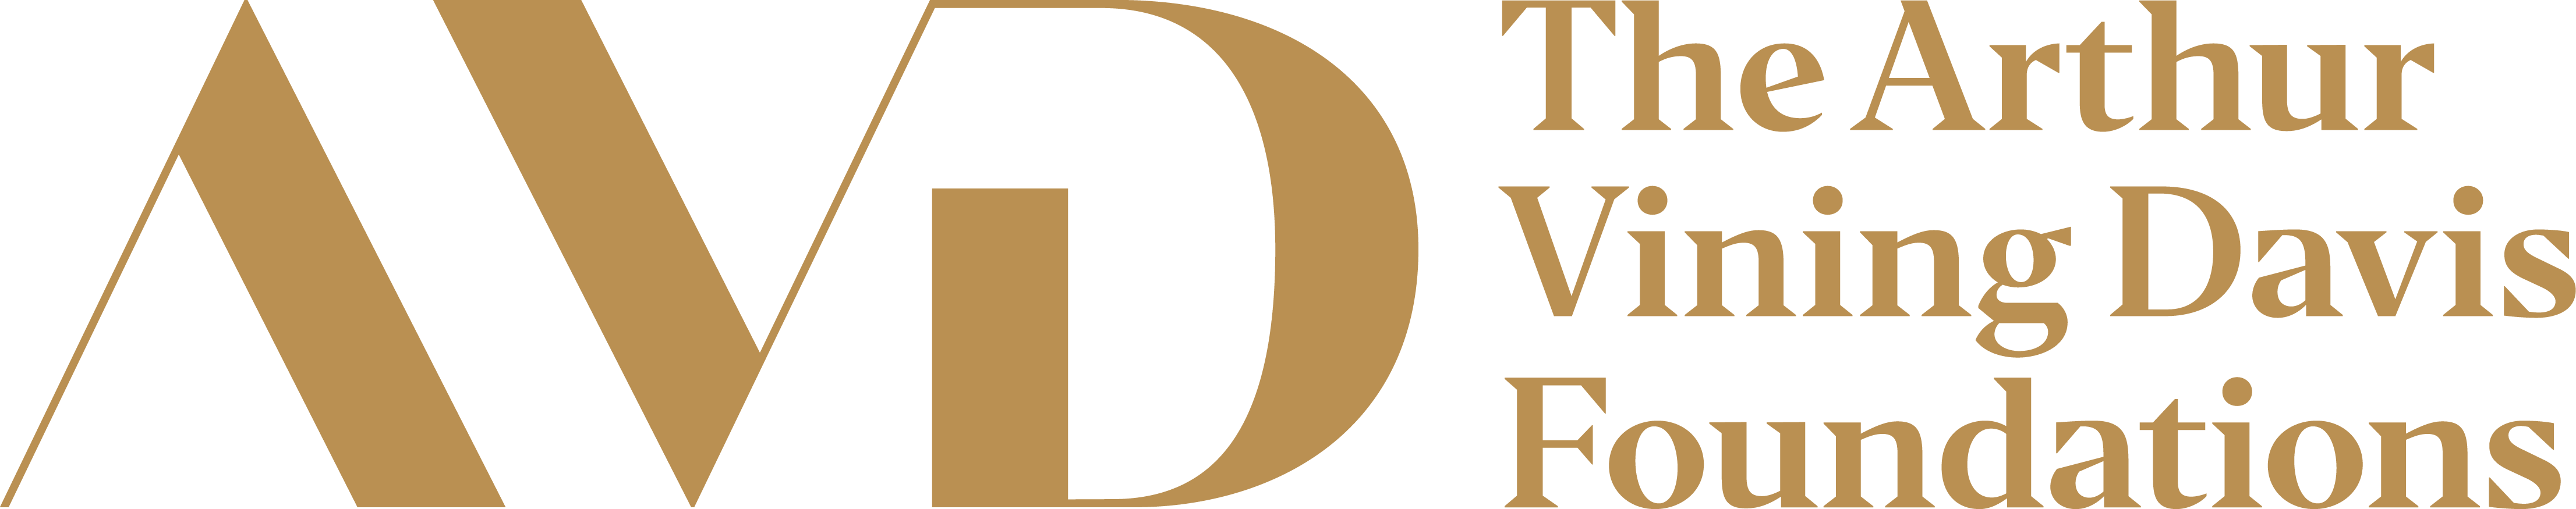 The Arthur Vining Davis Foundations logo